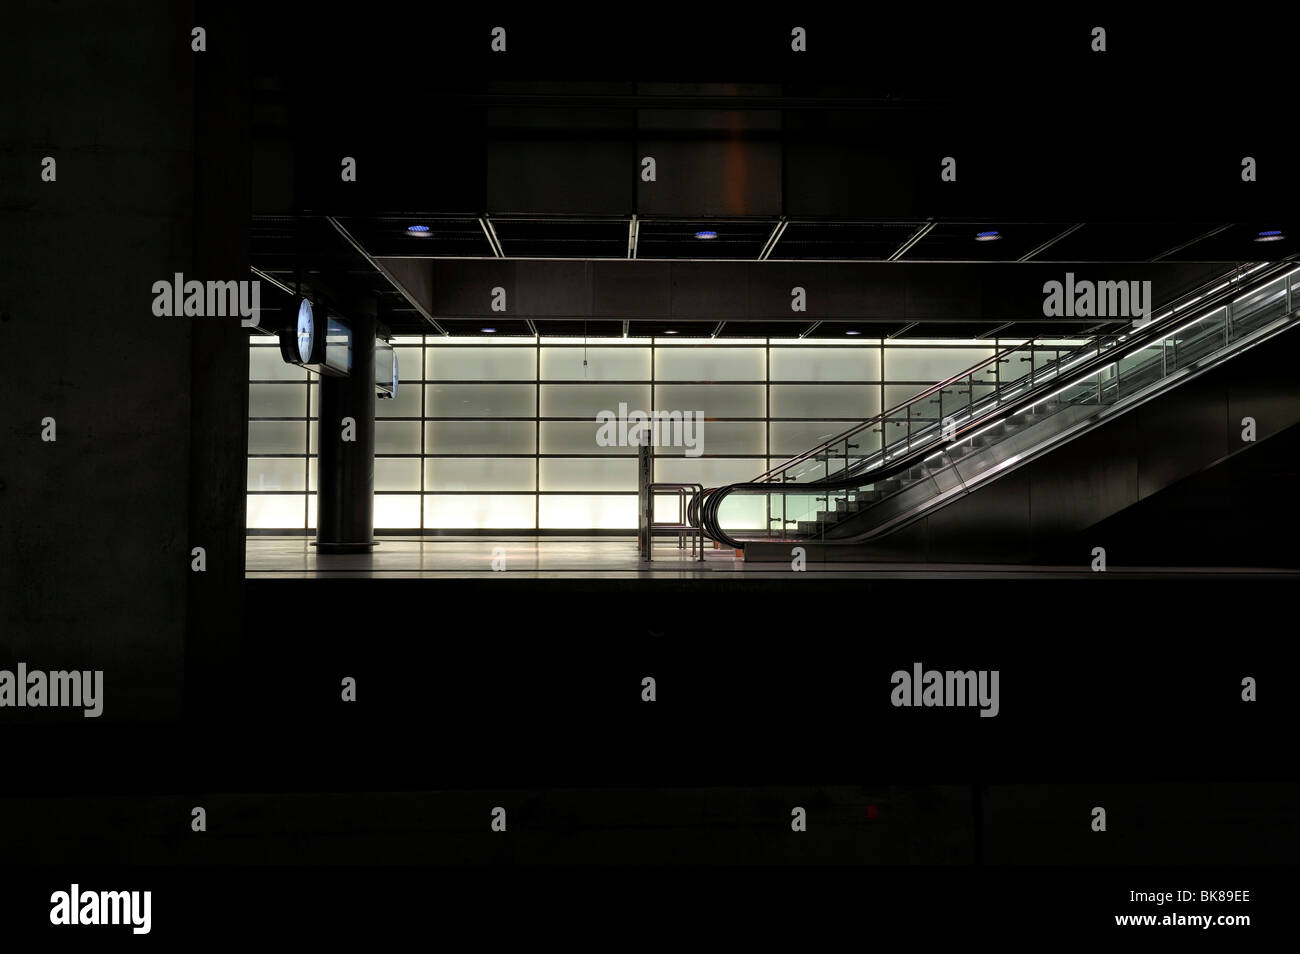 Escaliers mécaniques dans une gare ferroviaire, Berlin Allemagne Banque D'Images